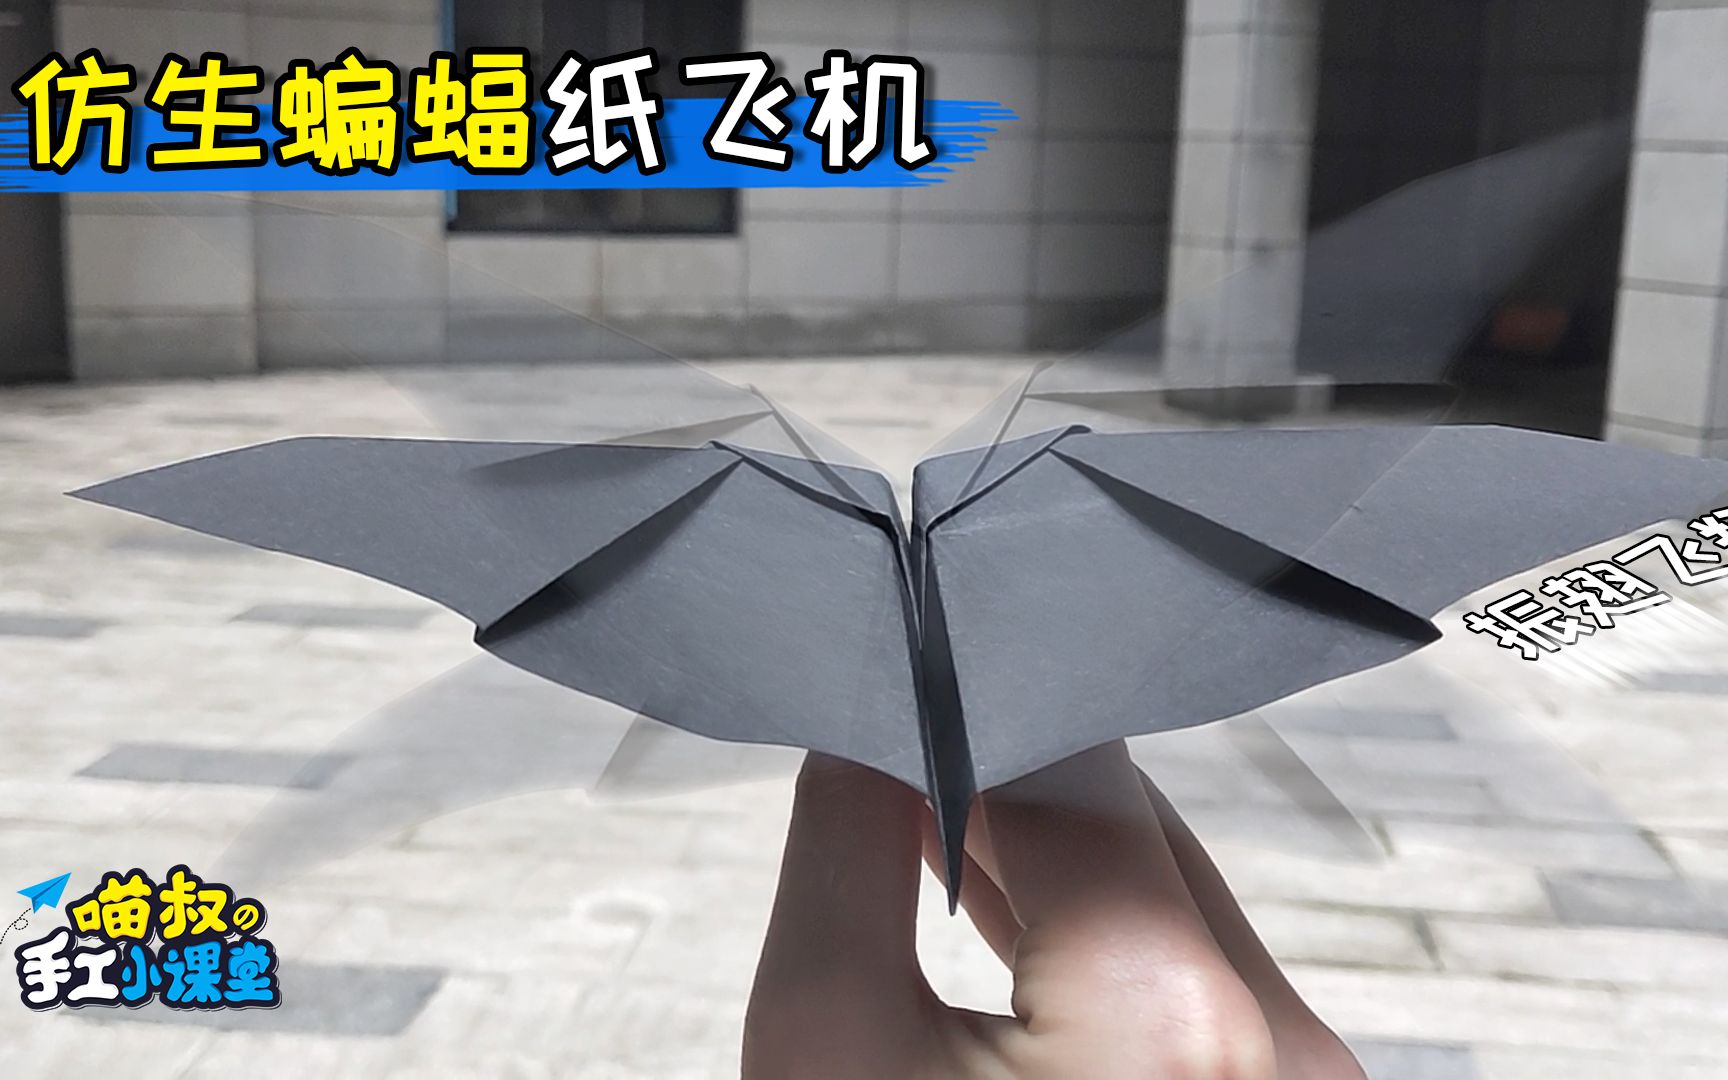 仿生蝙蝠飞机折纸,像蝙蝠一样振翅飞翔